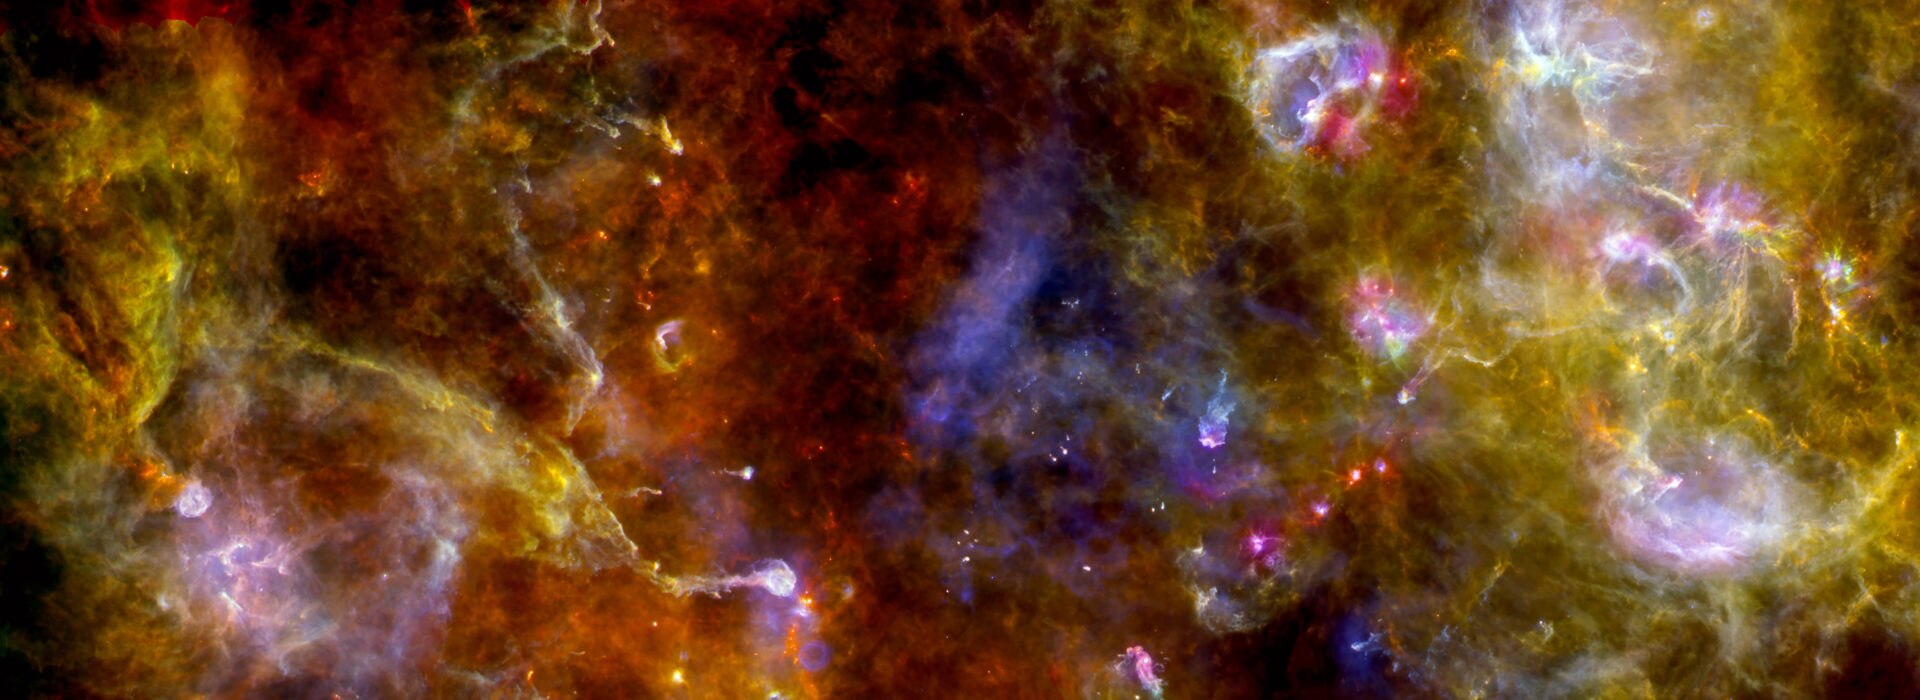 Imagen de la constelación de Cygnus (el Cisne) tomada por el telescopio espacial Herschel de la ESA